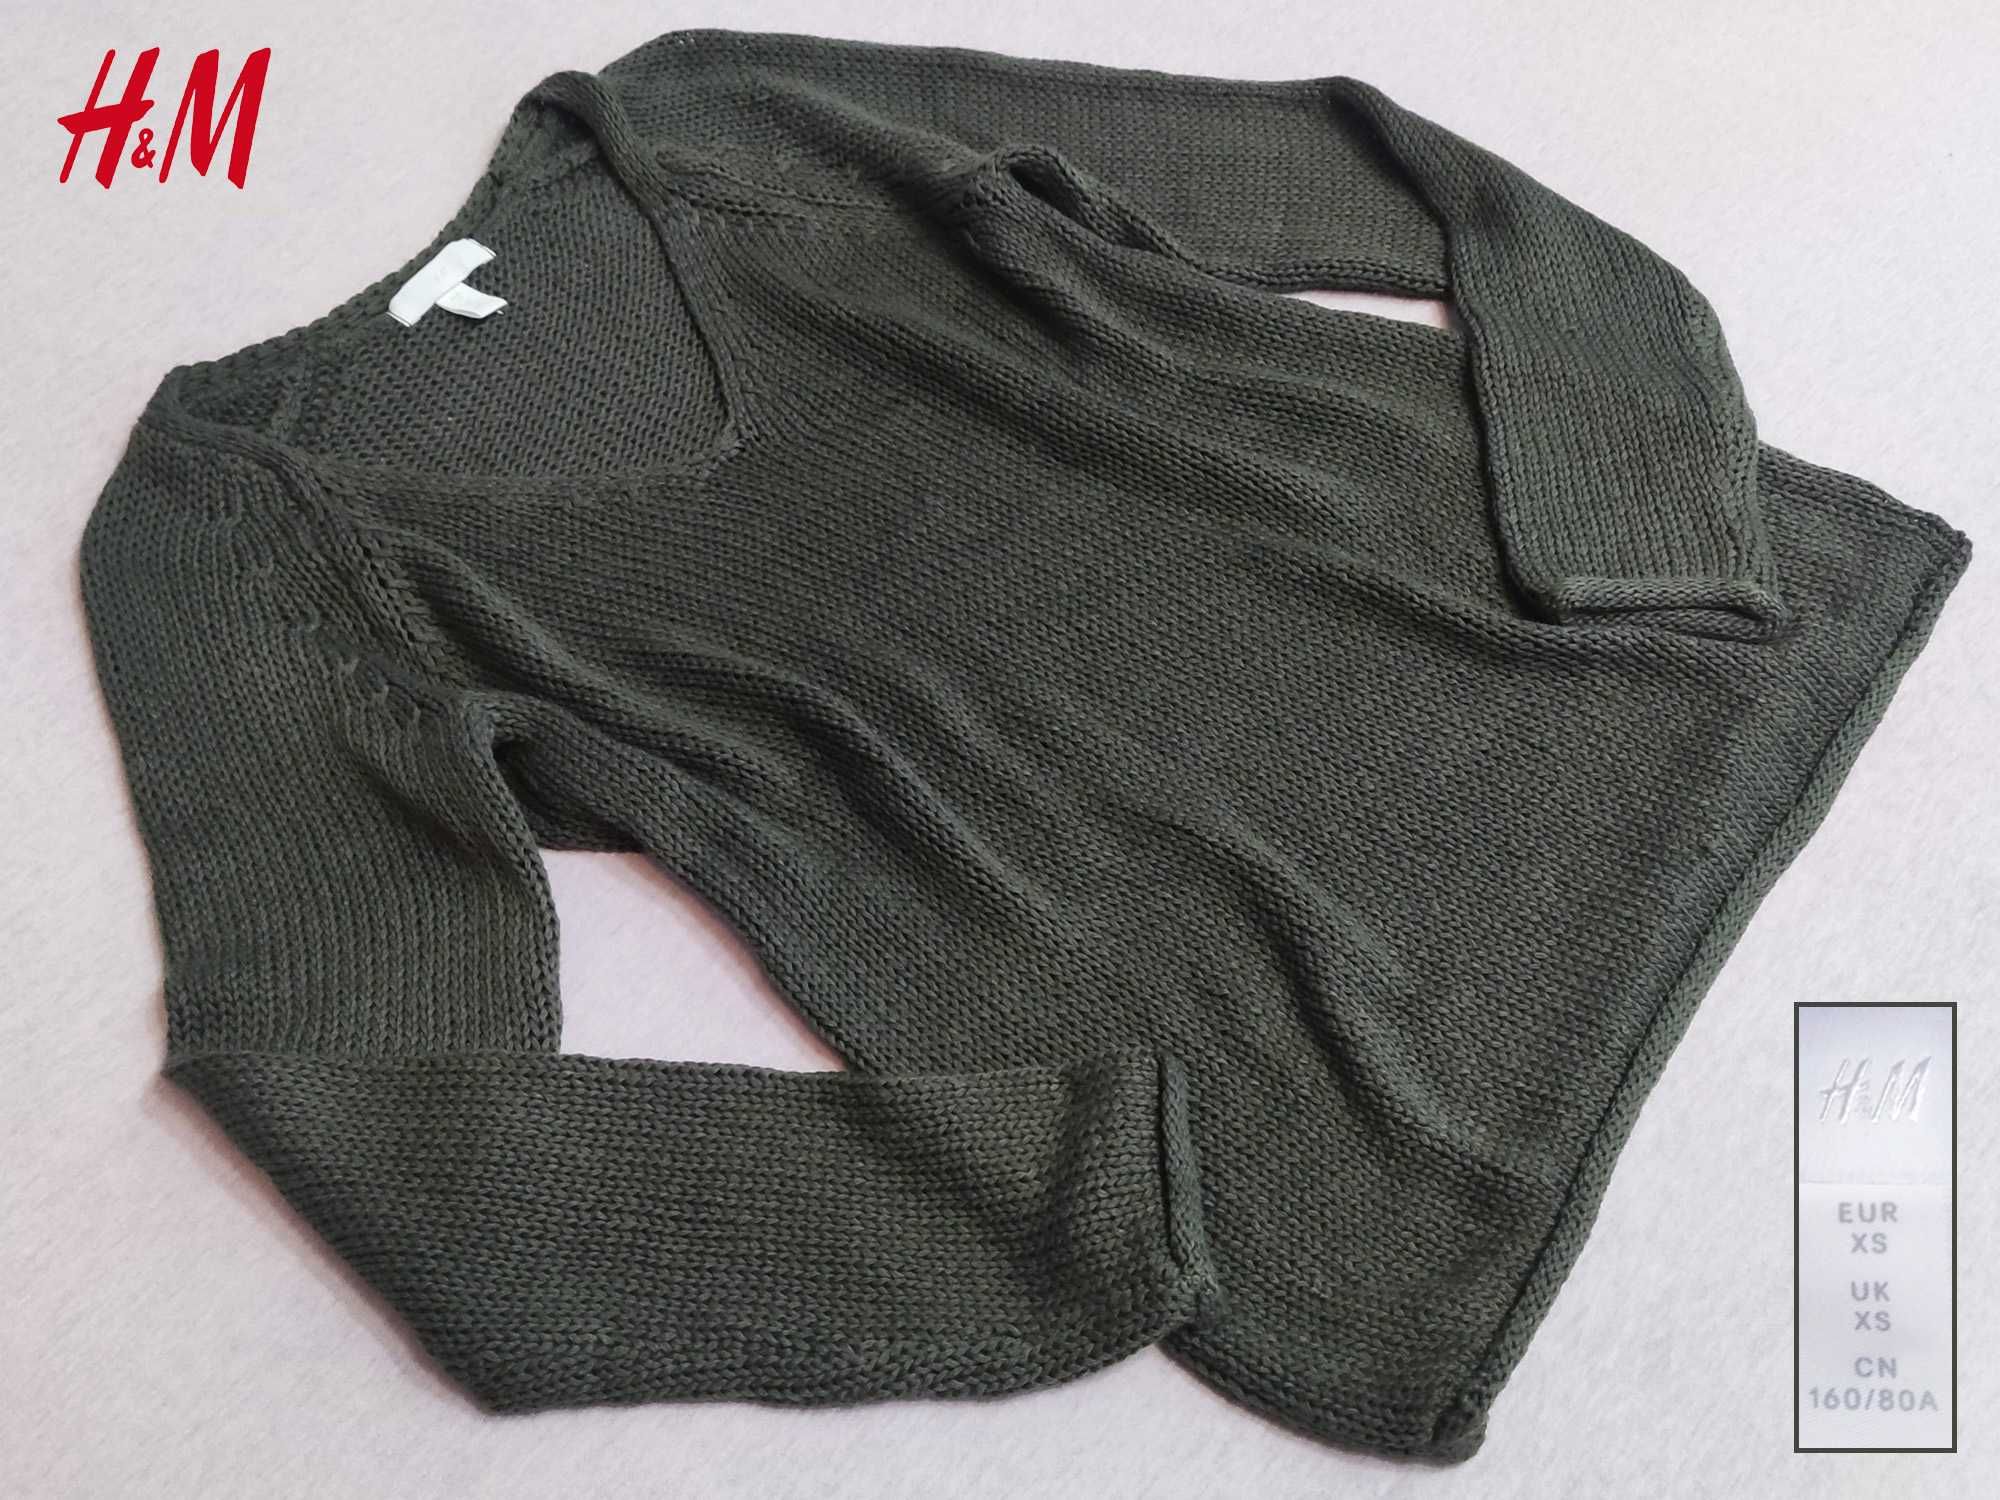 H&M Super Sweter XS pulower khaki zielony oliwkowy długi rękaw 34